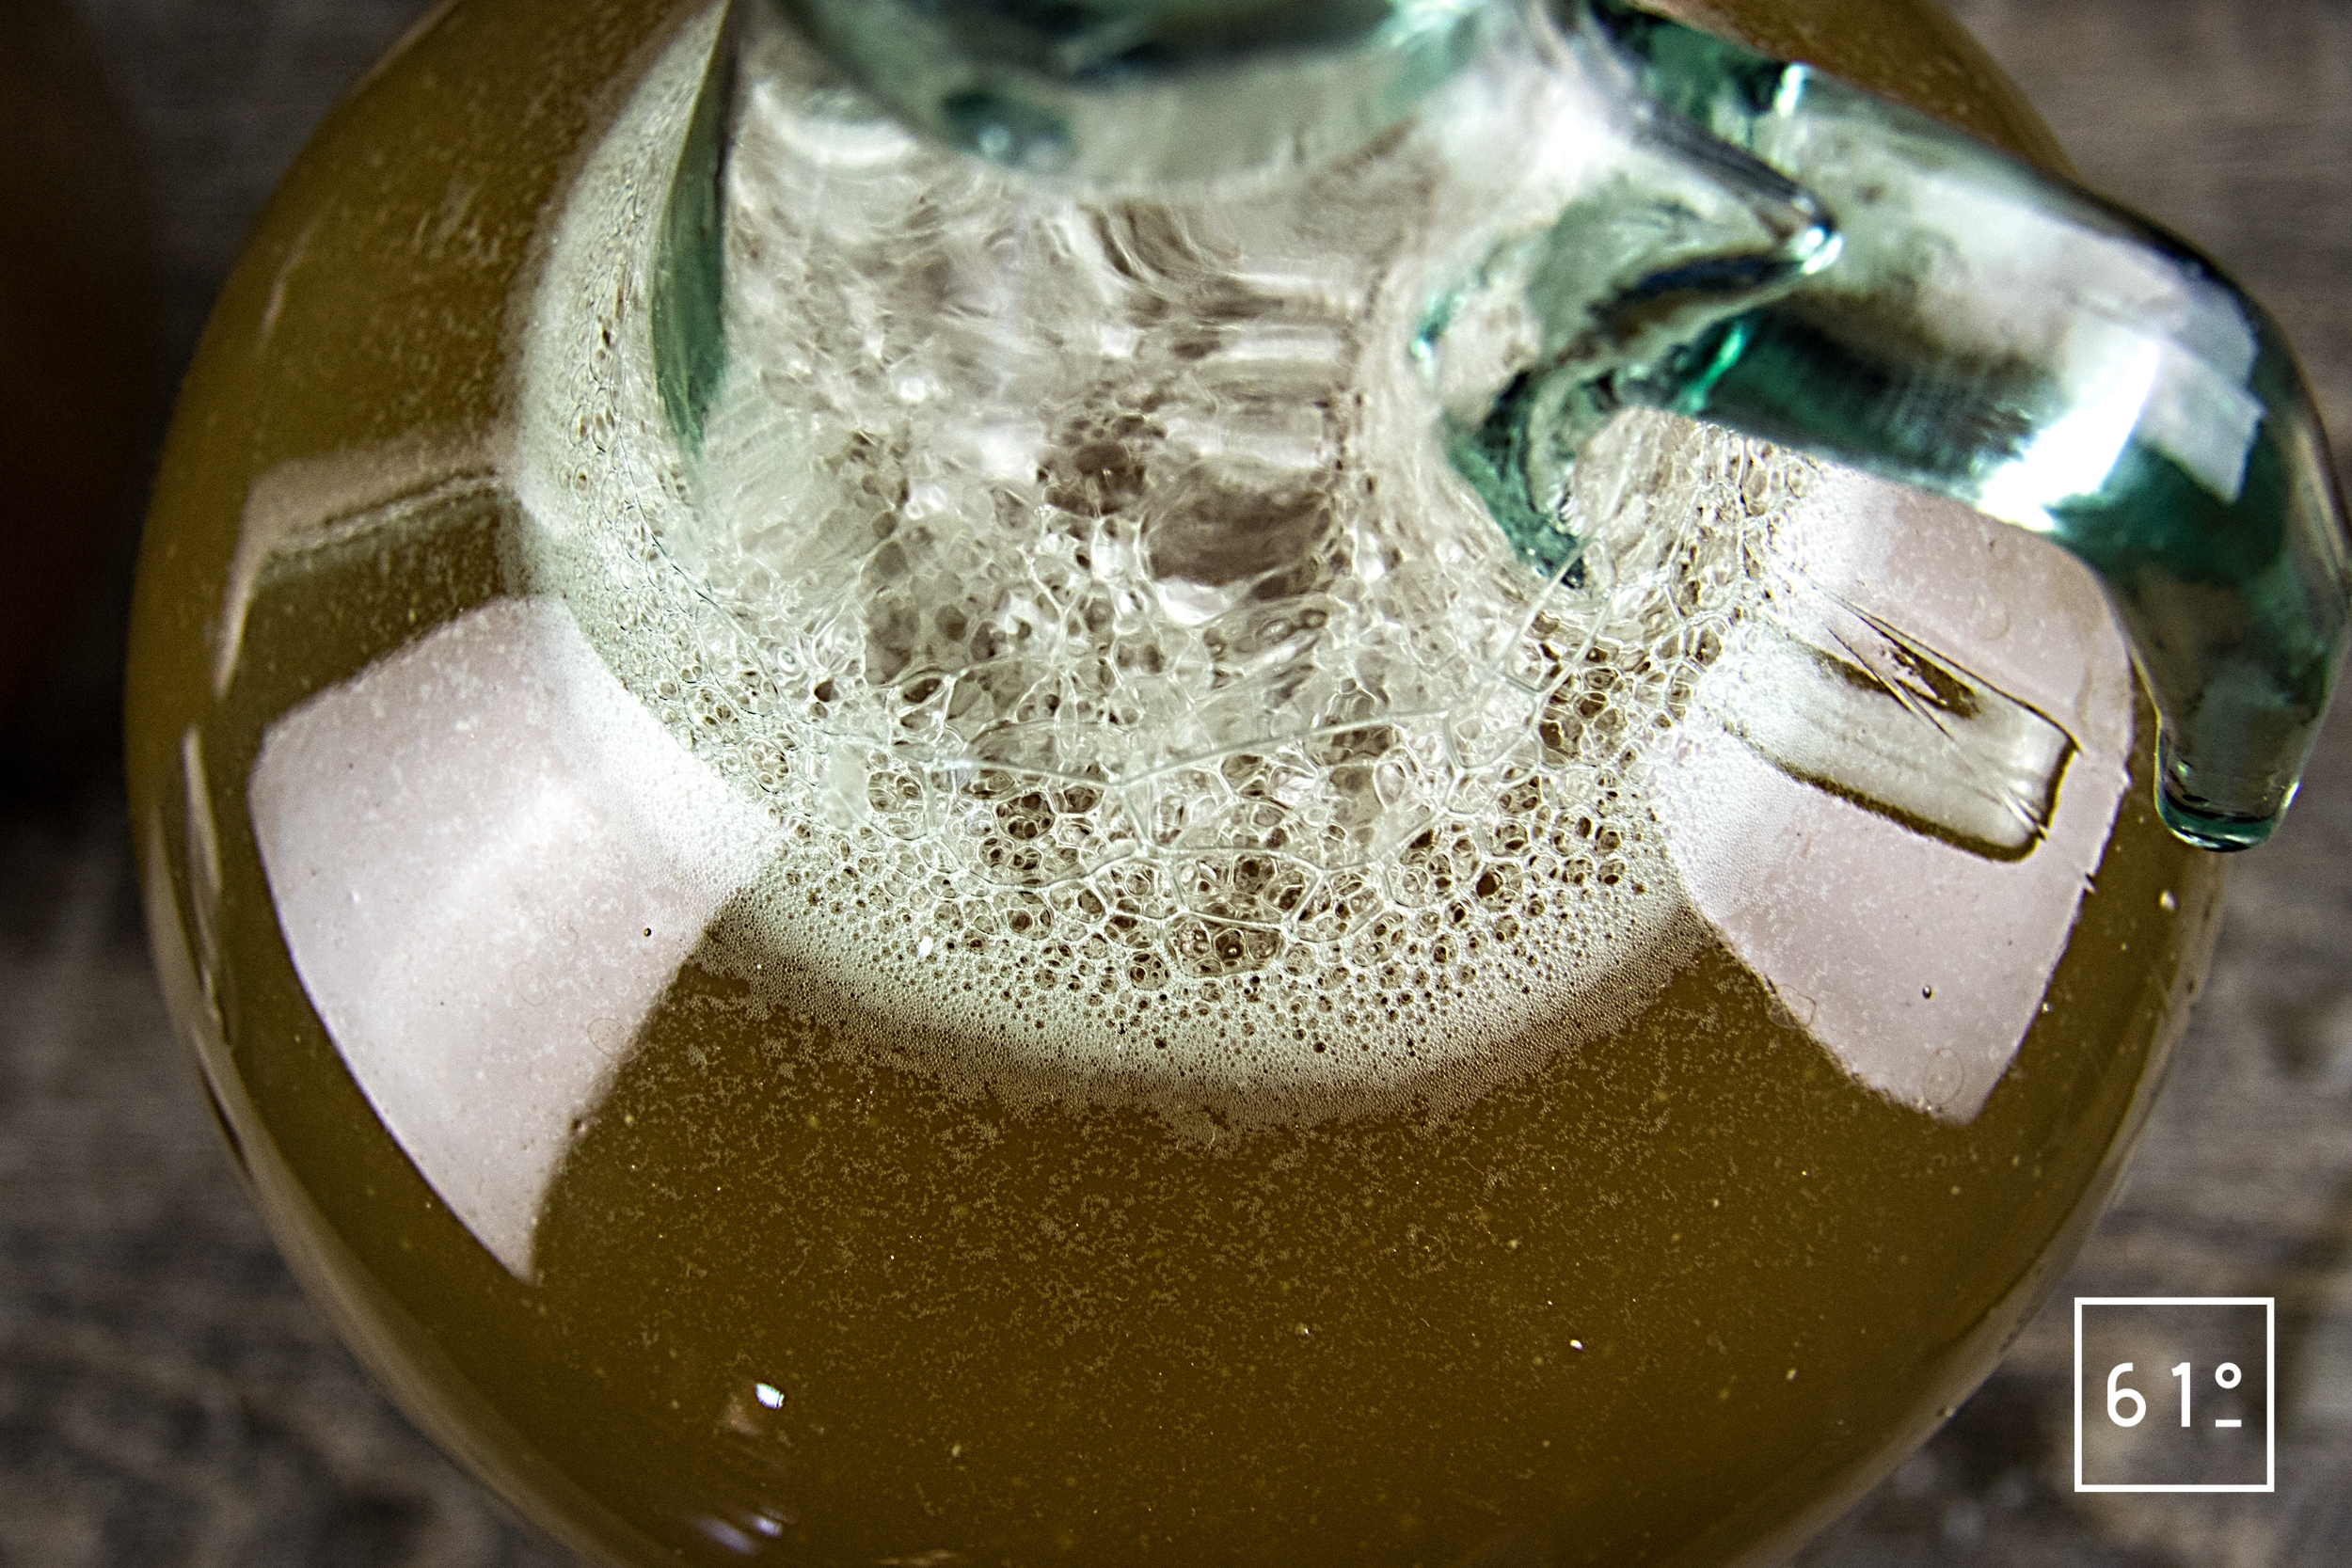 Mesurer le degré d'alcool des boissons à la maison : comment procéder si on  n'a pas d'alcoomètre ?